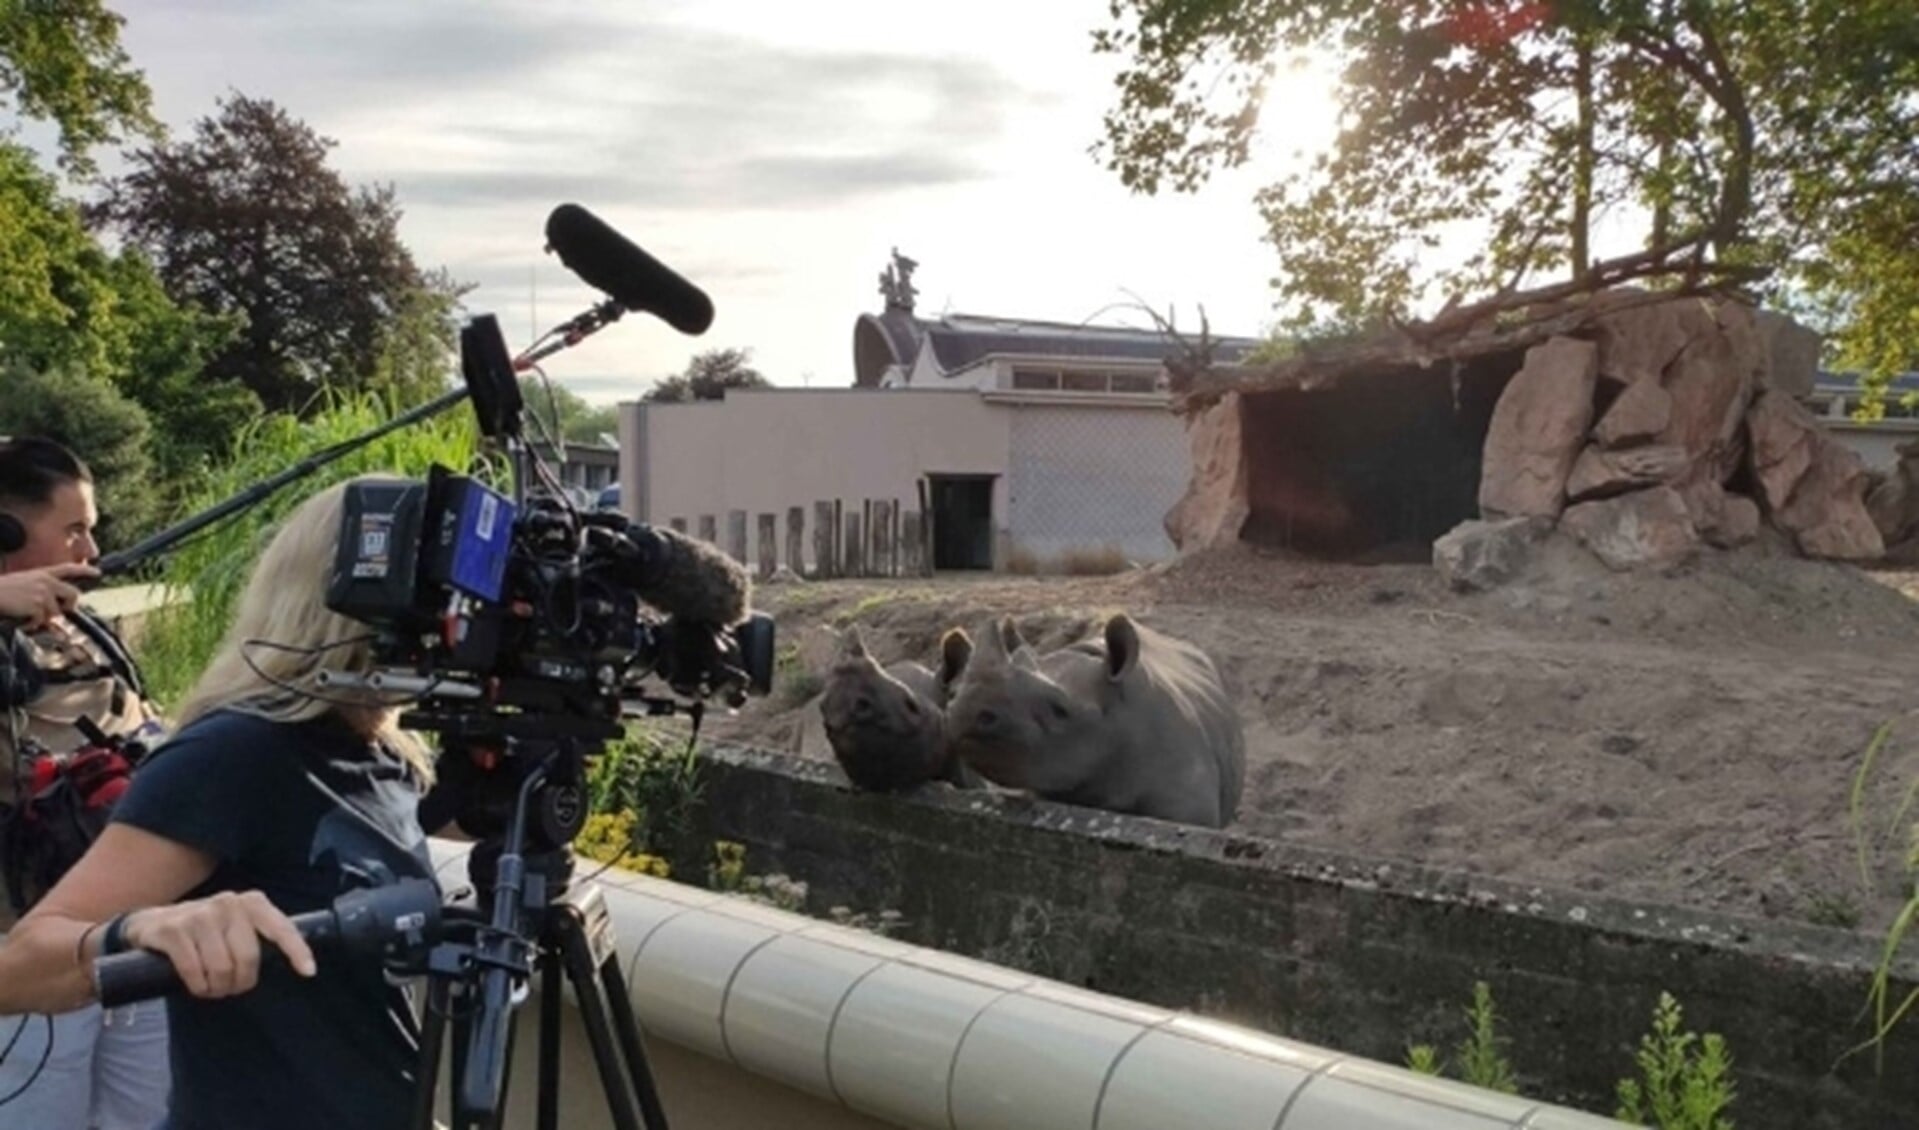 De tv-serie ‘Het echte leven in de dierentuin’ is deze zomer terug op tv. Dit seizoen leggen de verborgen camera’s het dierenleven in Diergaarde Blijdorp vast. 